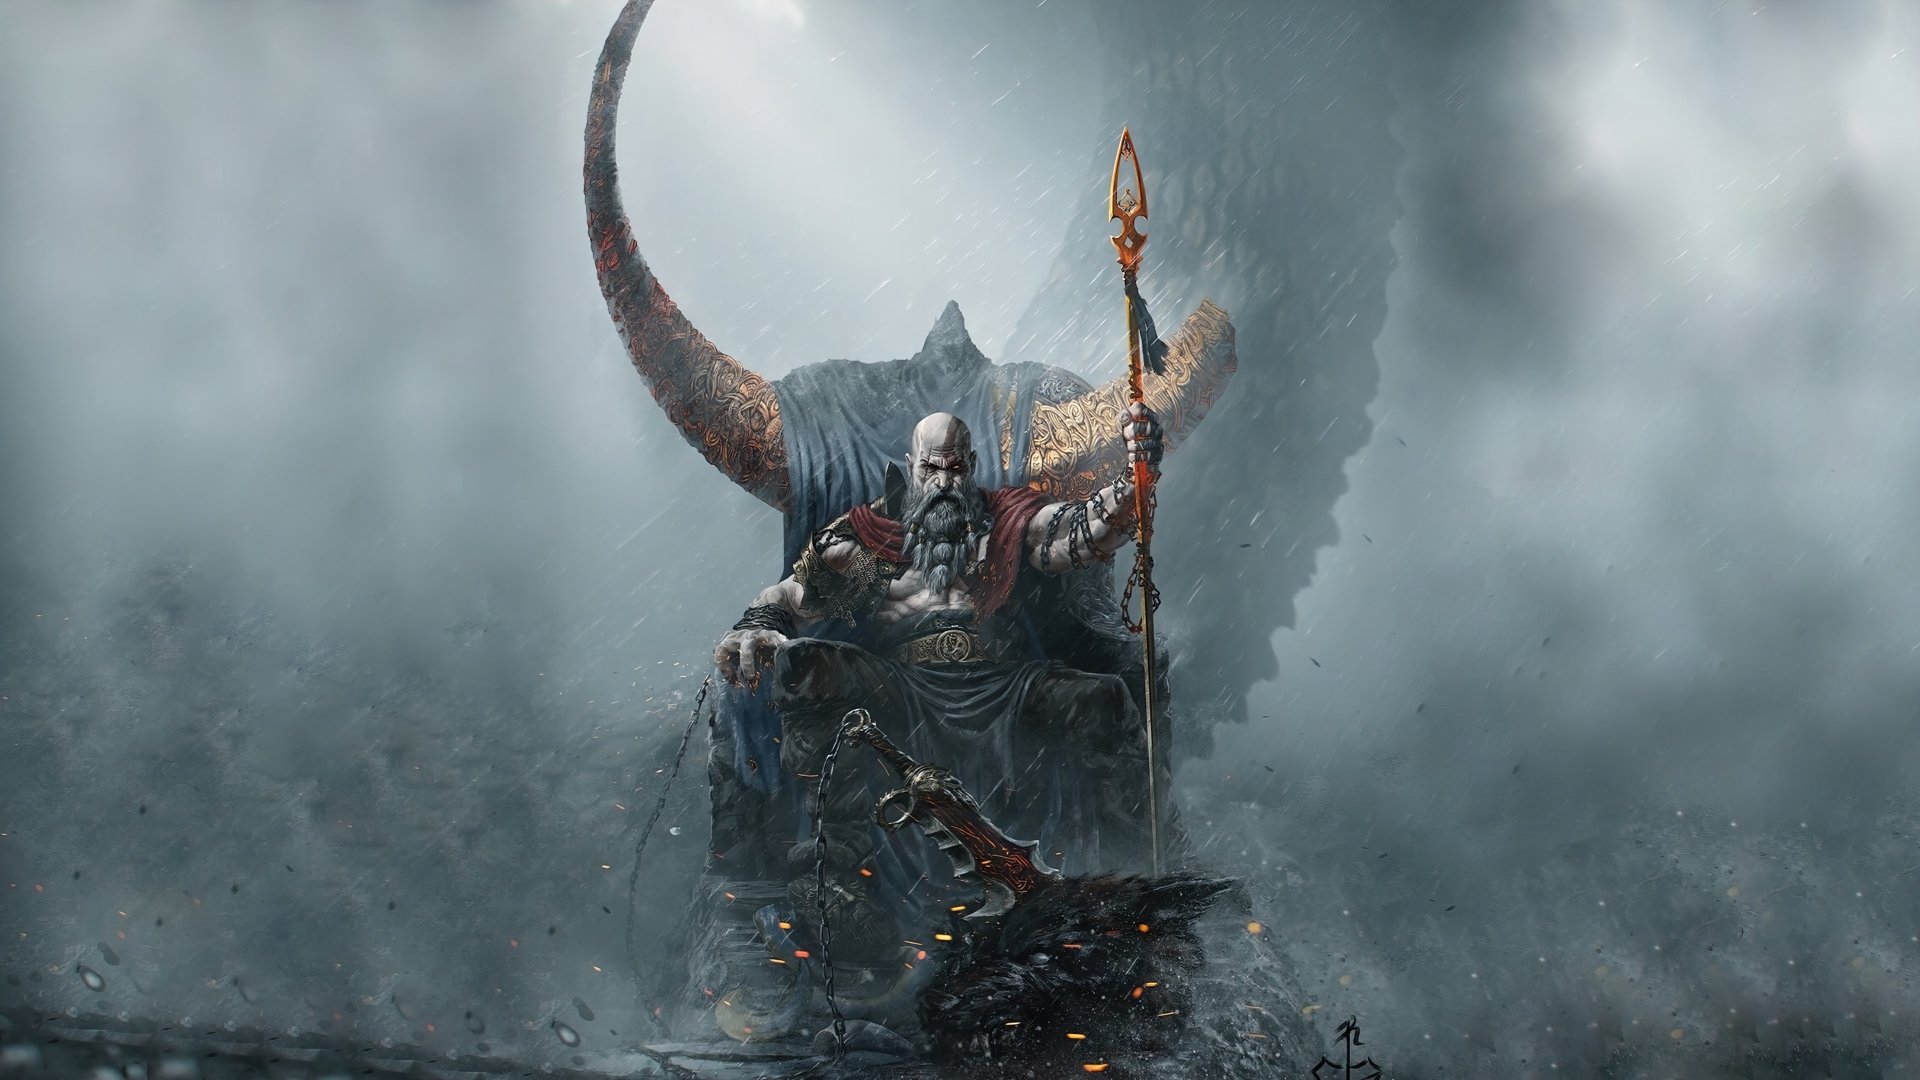 god of war ragnarok price download